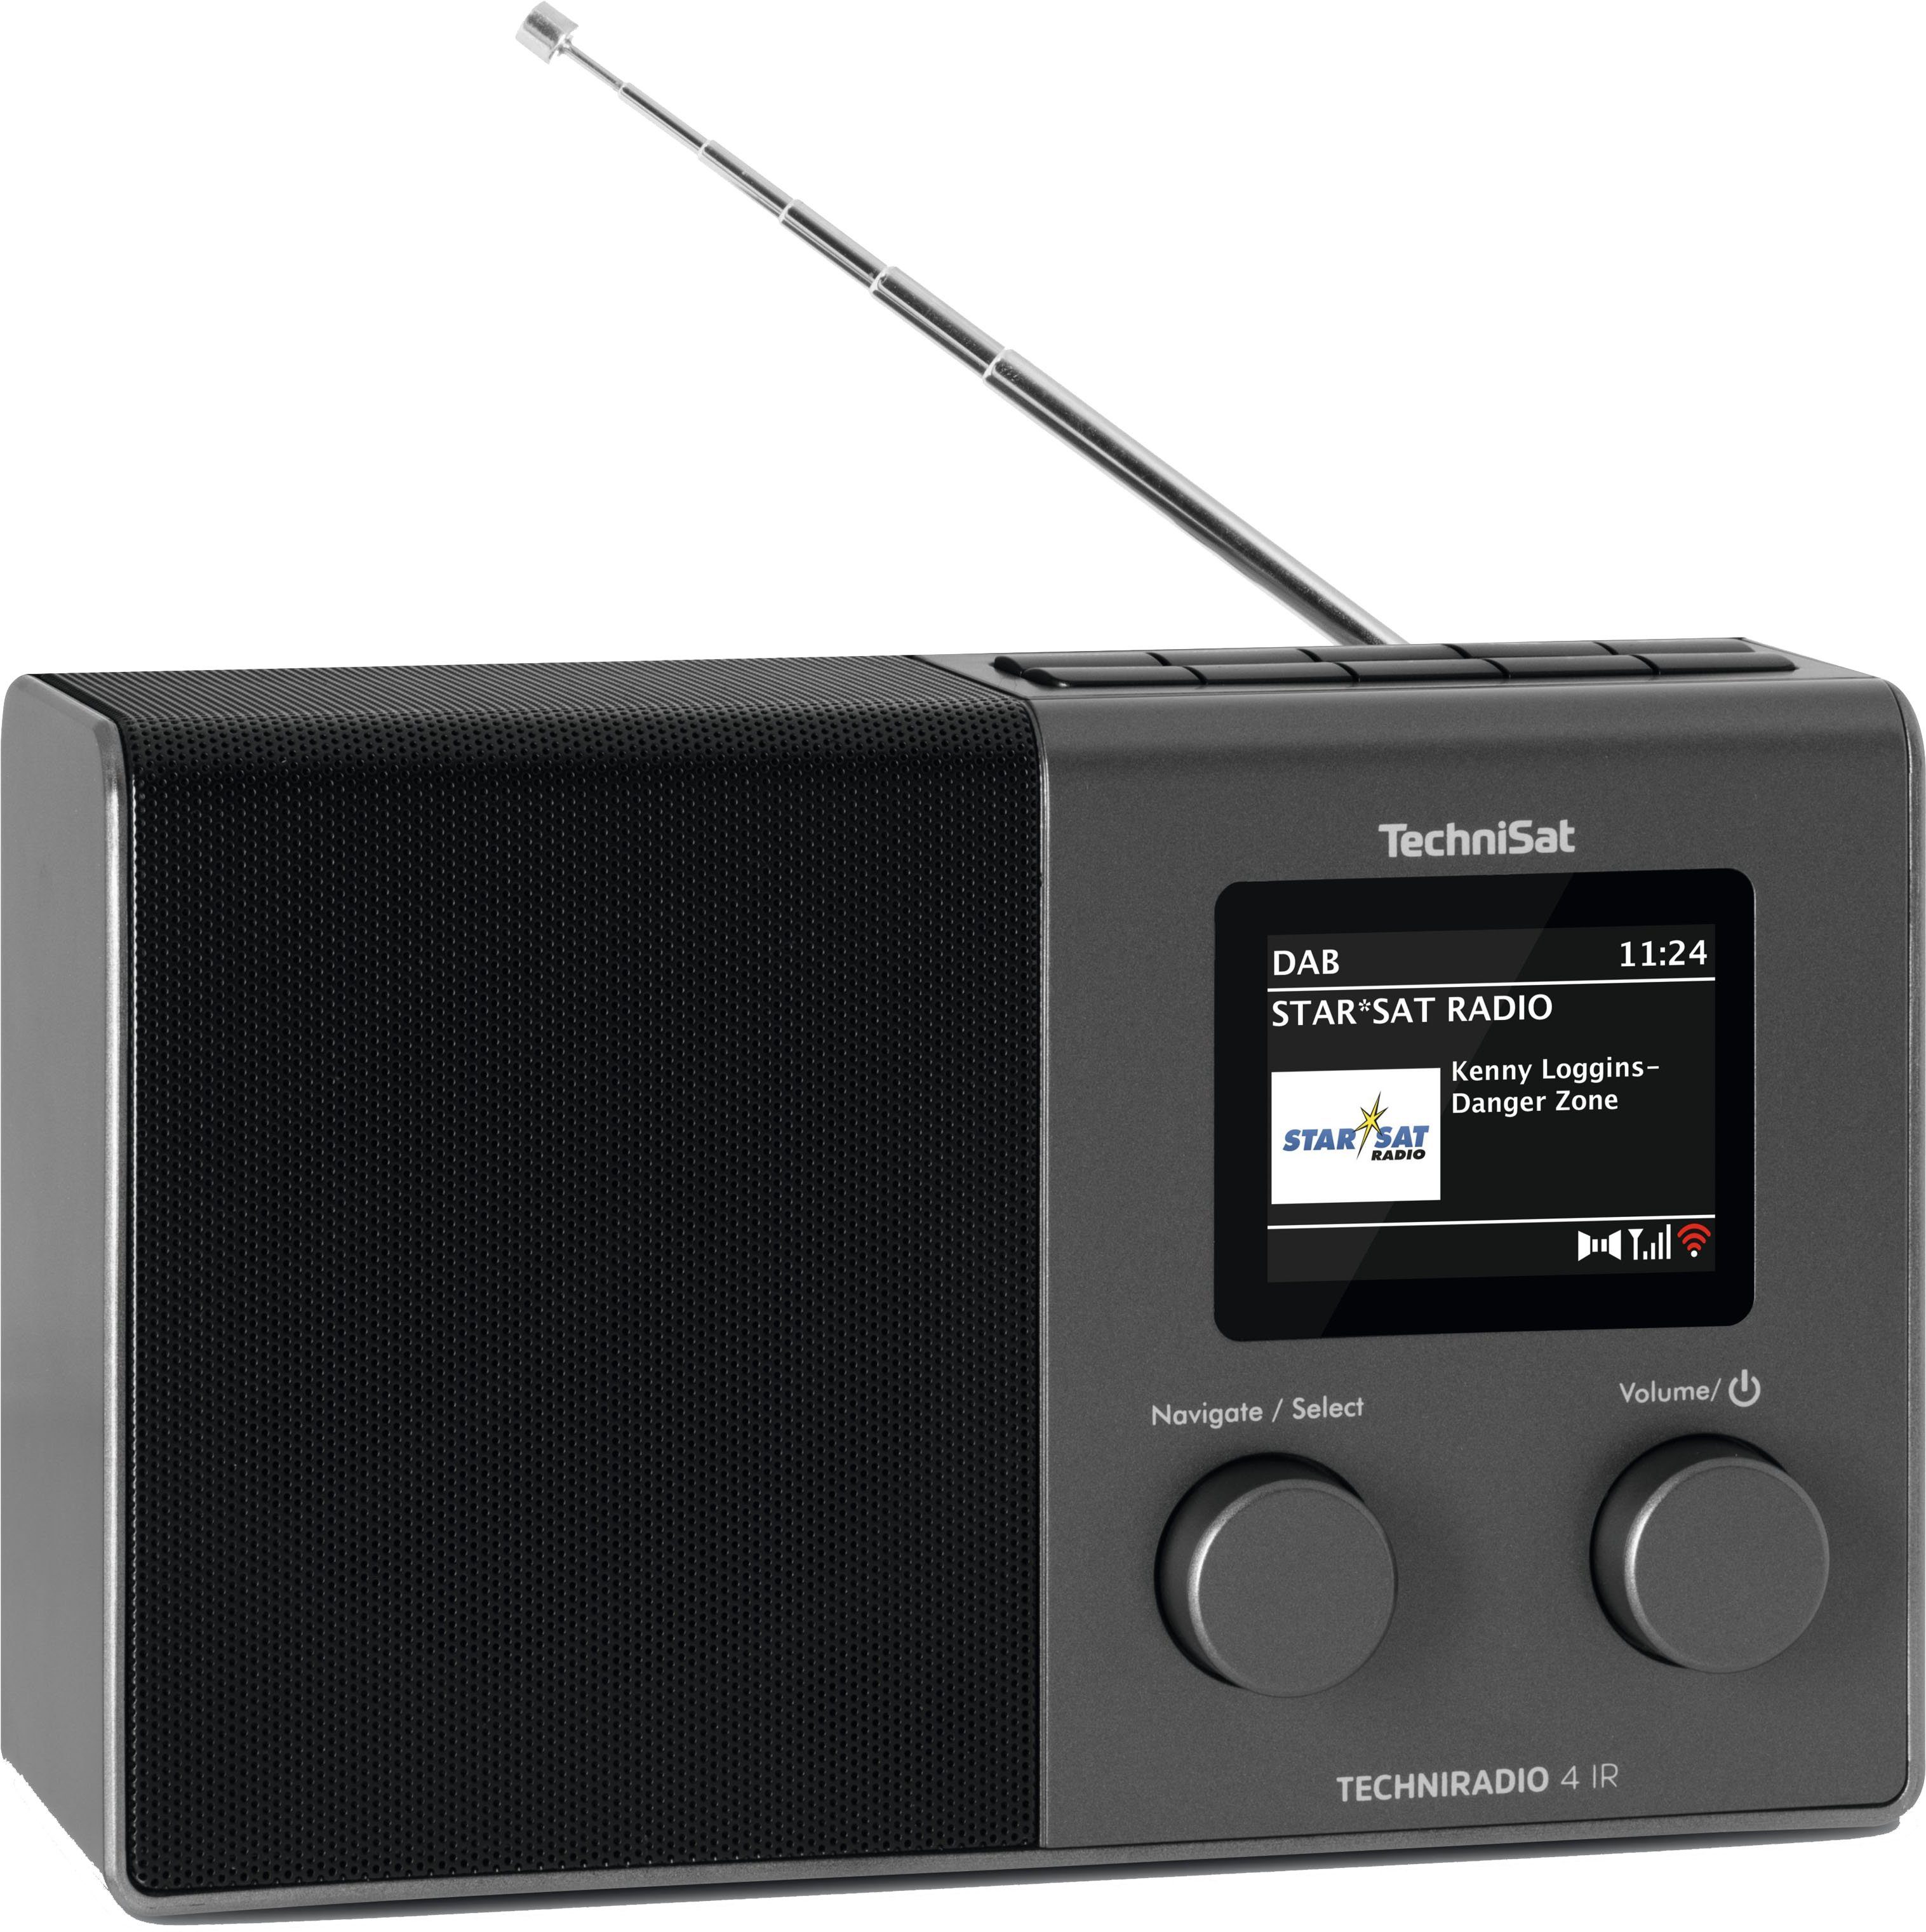 TechniSat internetradio TECHNIRADIO 4 IR kompaktes